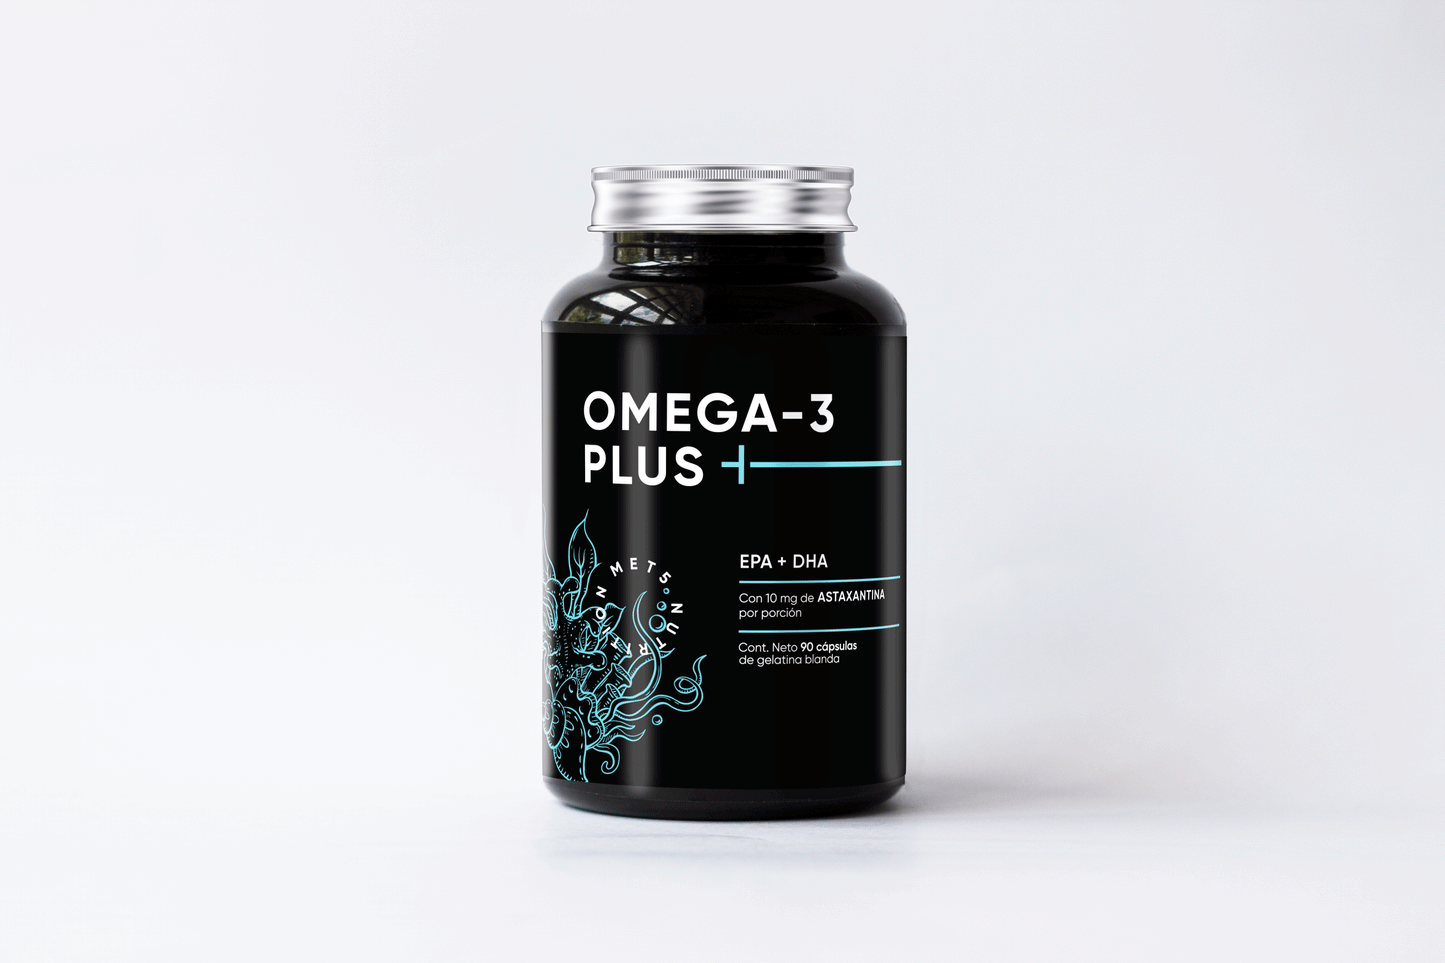 Omega 3 + Astaxantina - 90 Capsulas -  epa y dha omega 3